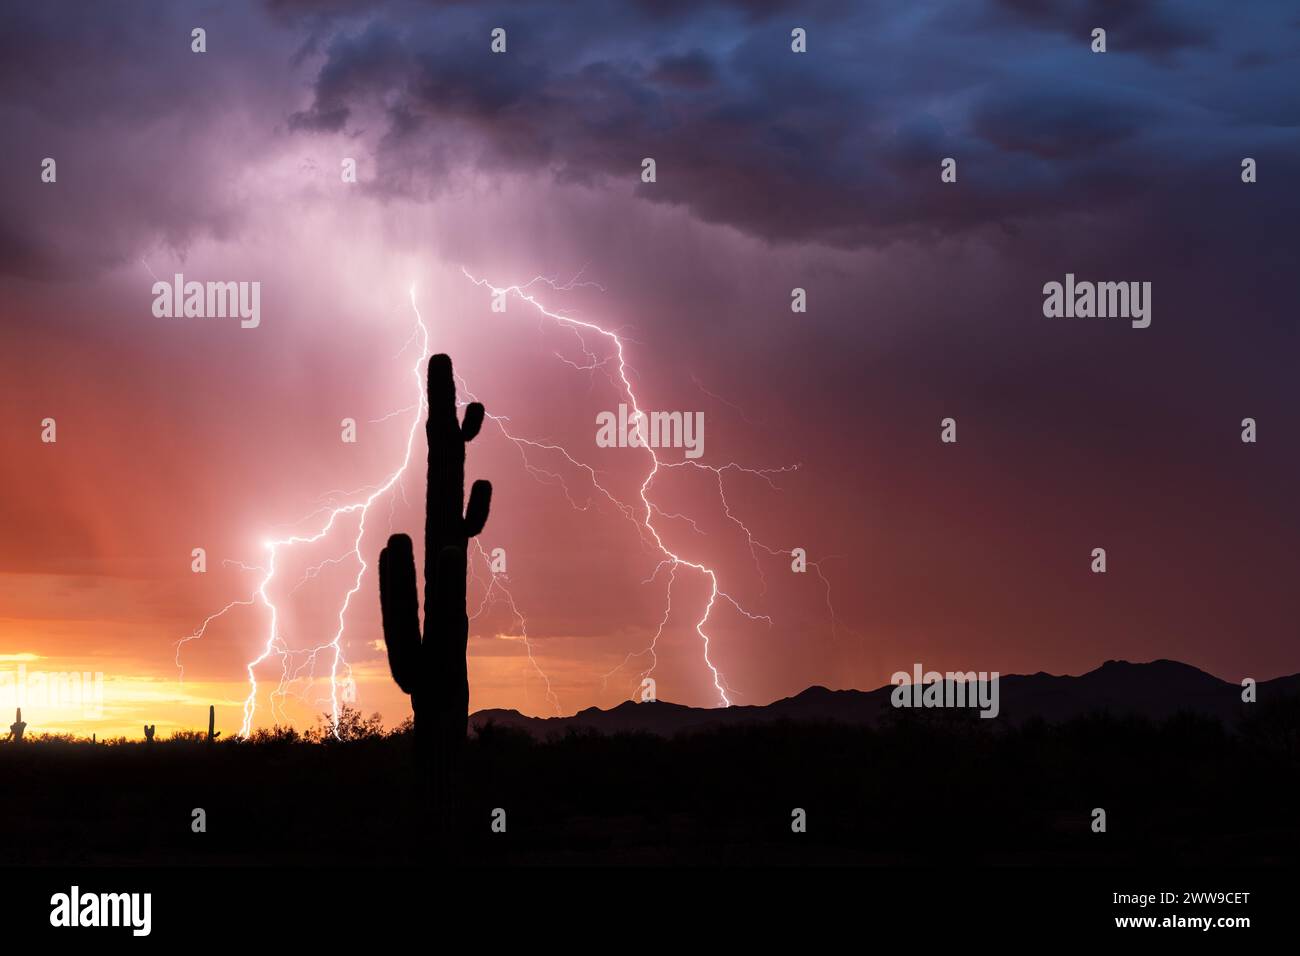 Sonnenuntergang in Arizona, Blitzsturm mit Saguaro-Kakteen-Silhouetten Stockfoto